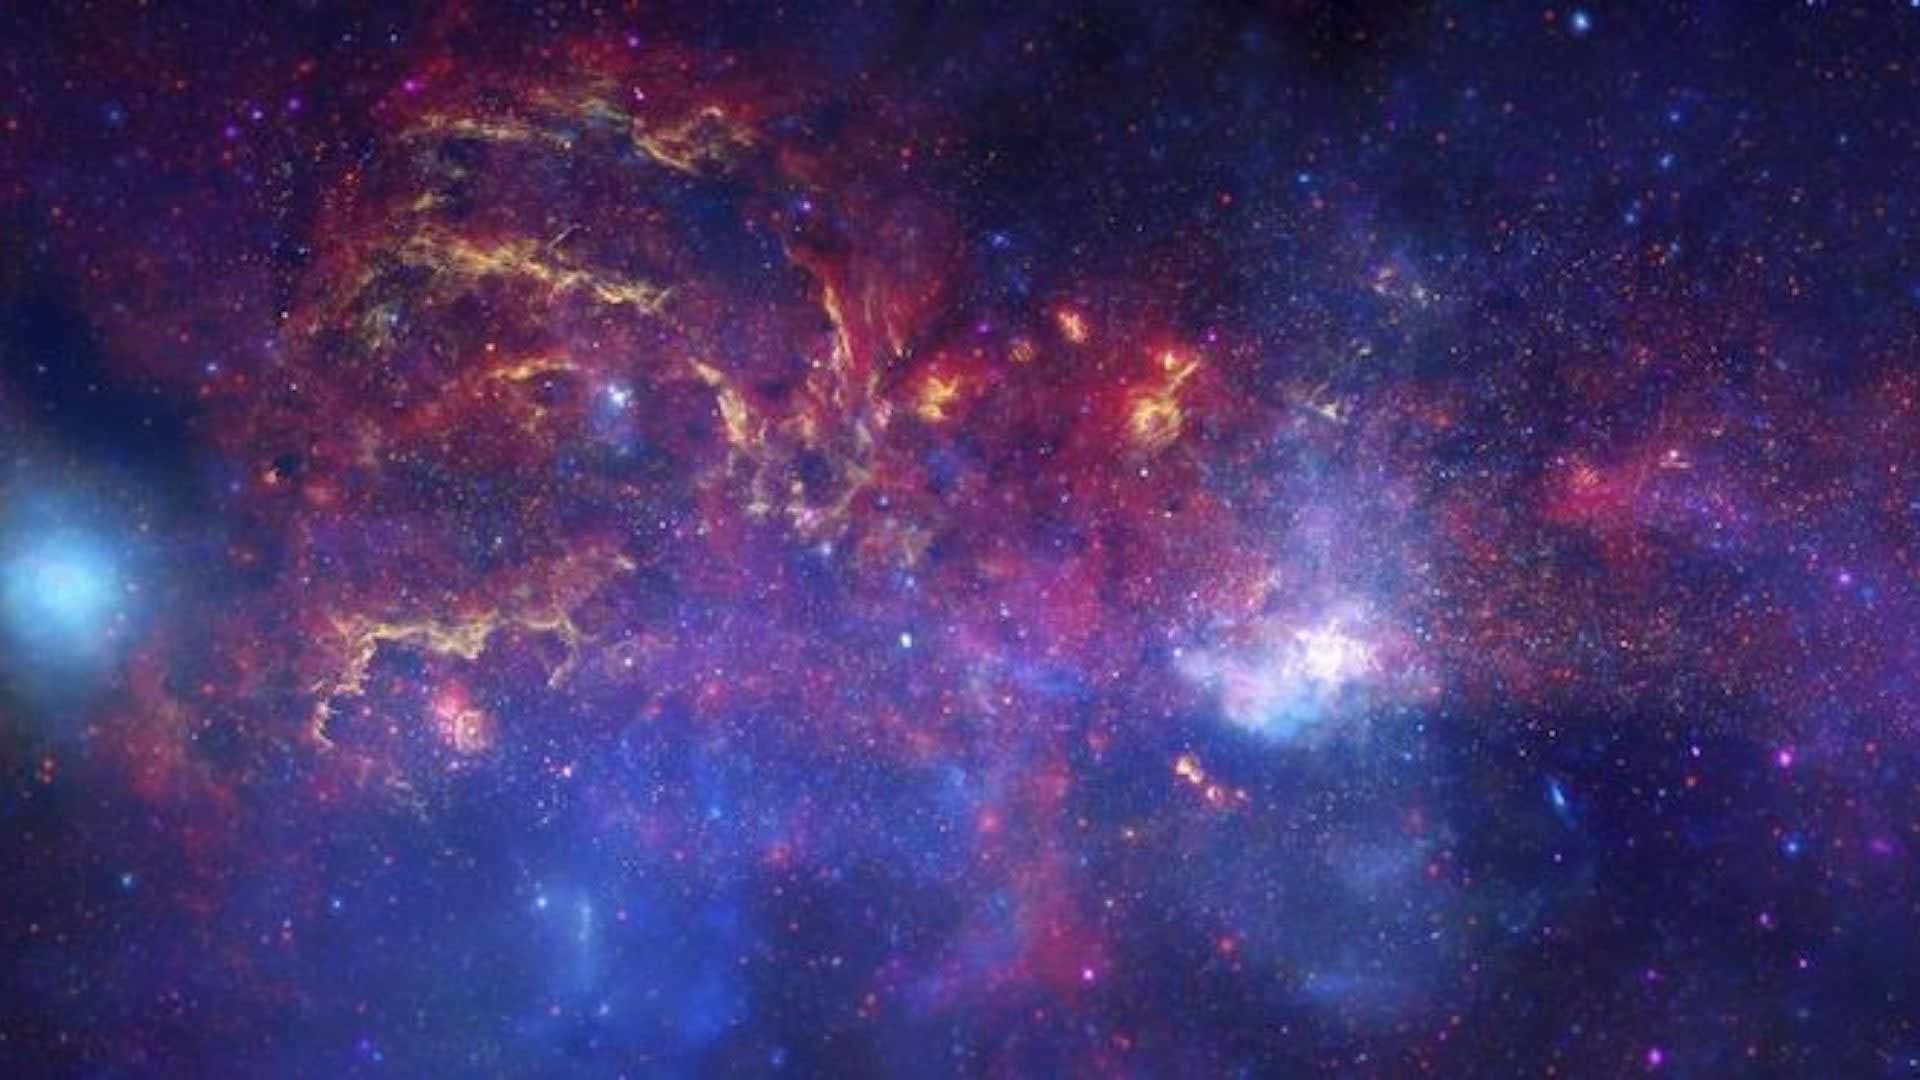 A galaxy at night.